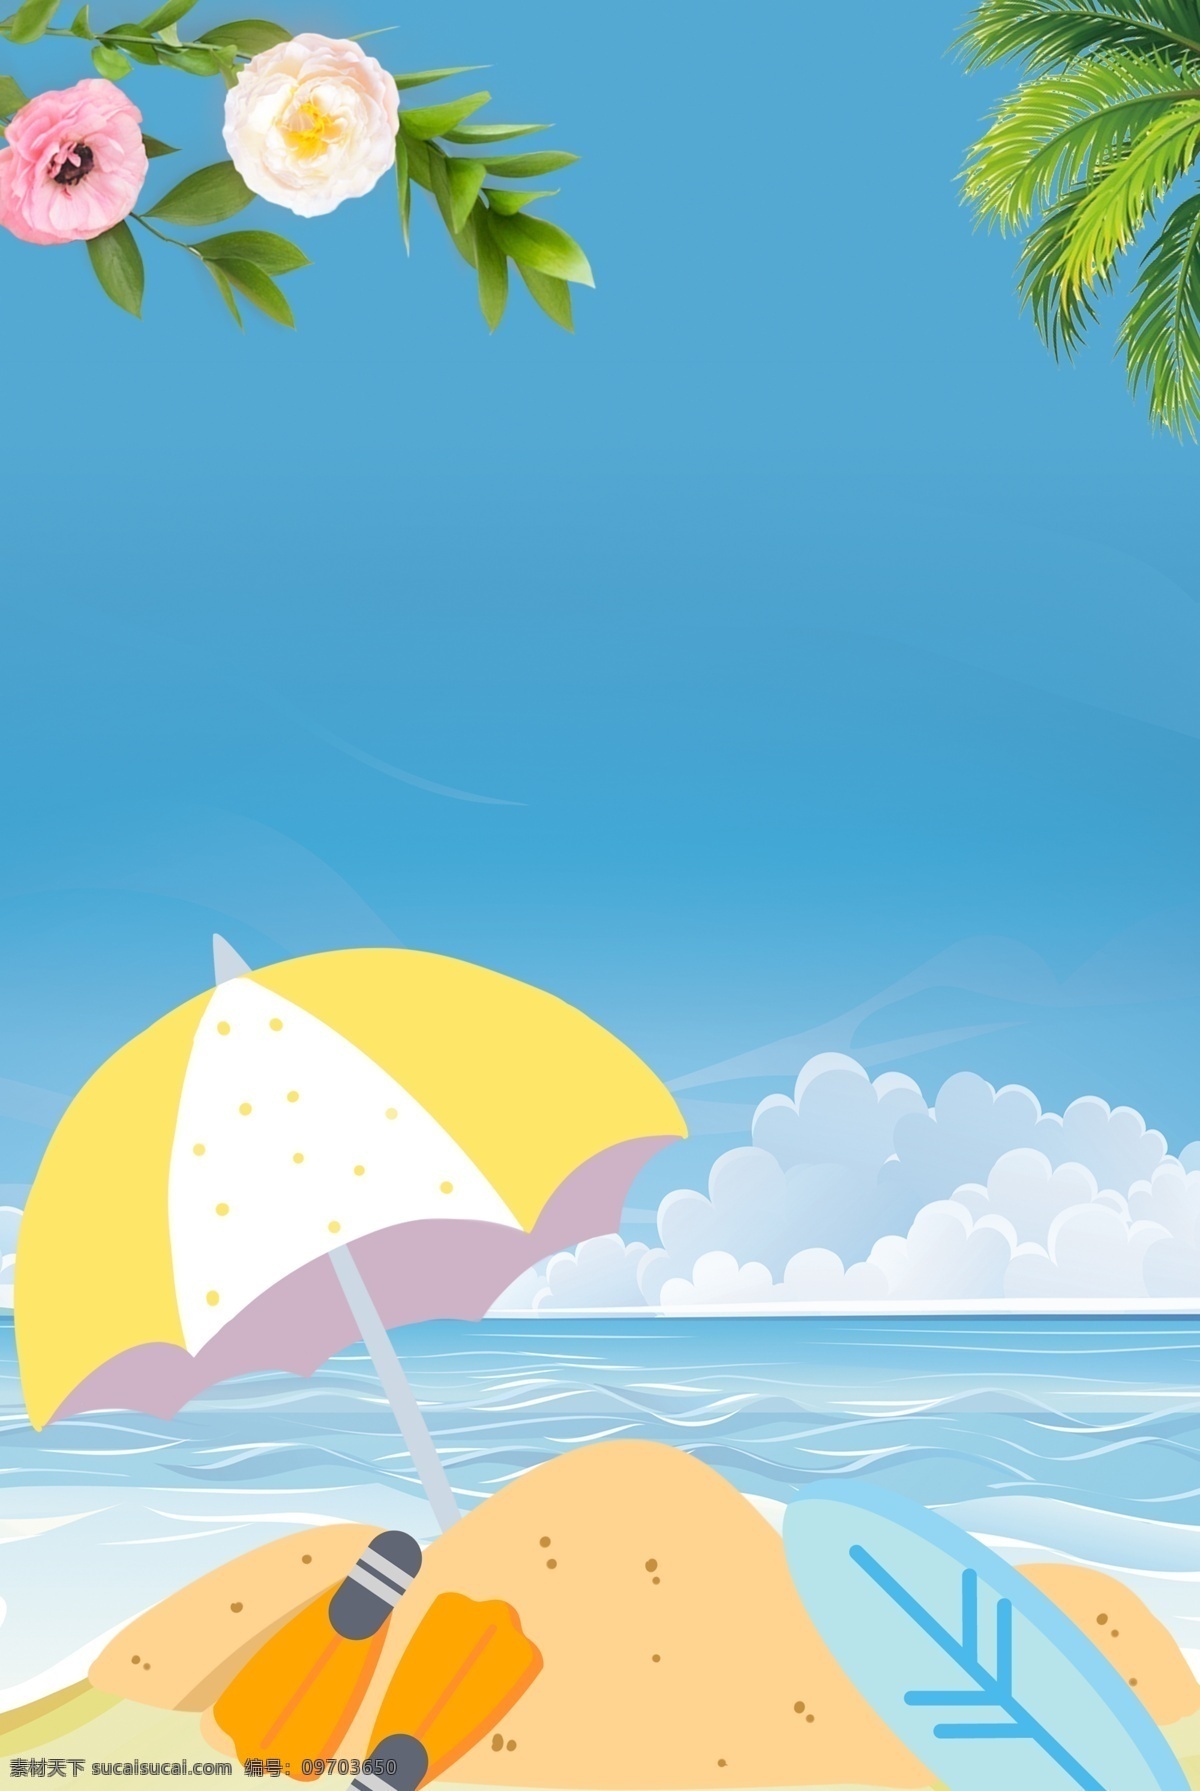 夏季 海滩 蓝色 文艺 海报 banner 背景 蓝色背景 psd源文件 淘宝 天猫 叶子 树木 温暖